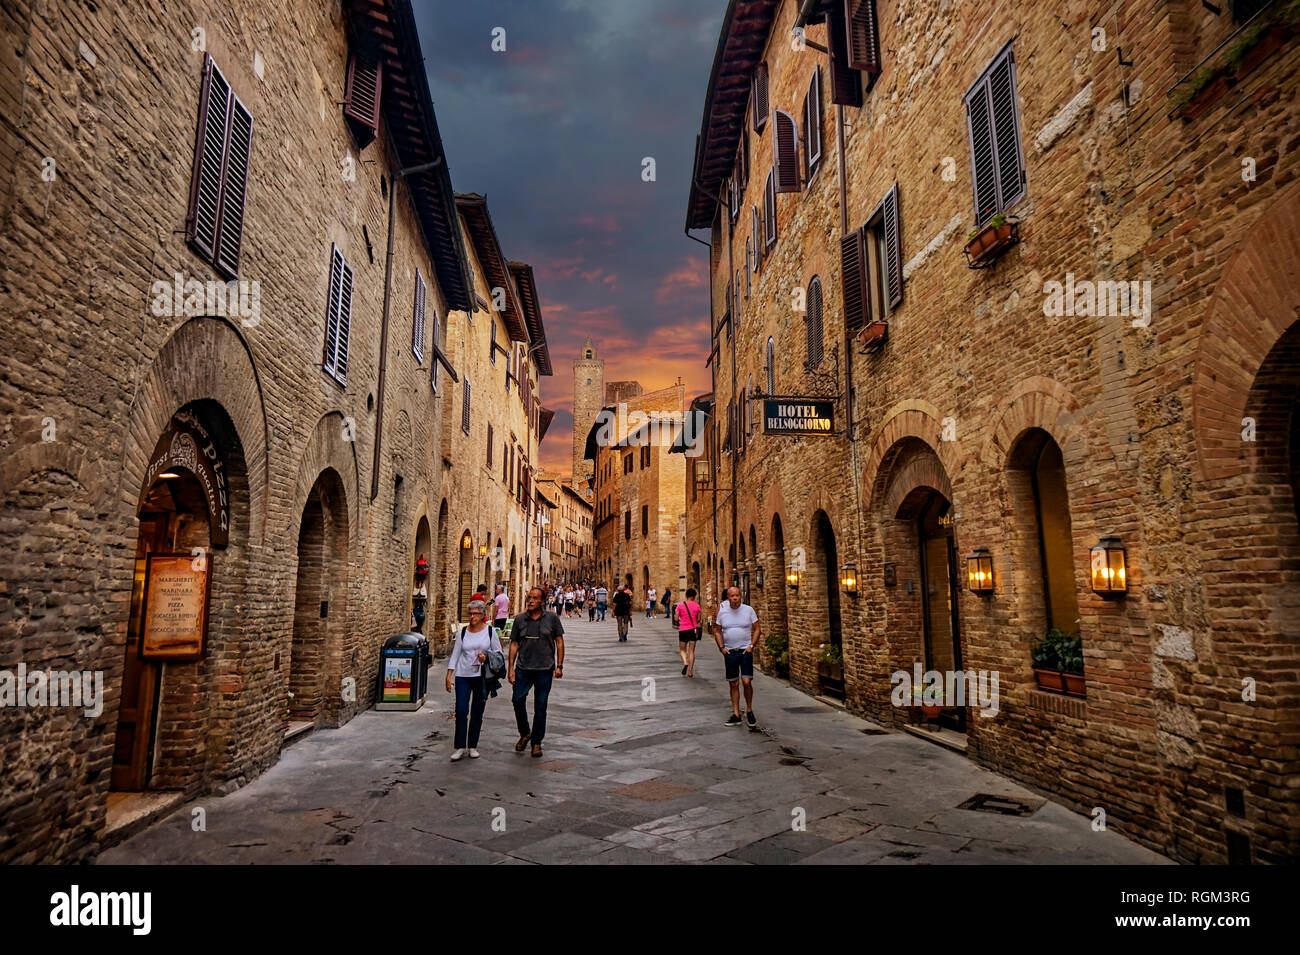 San Gimignano, Toscana / Italia - 09.15.2017: Antigua calle acogedor en la parte vieja de la ciudad de San Gimignano, una ciudad medieval típica toscana. Foto de stock